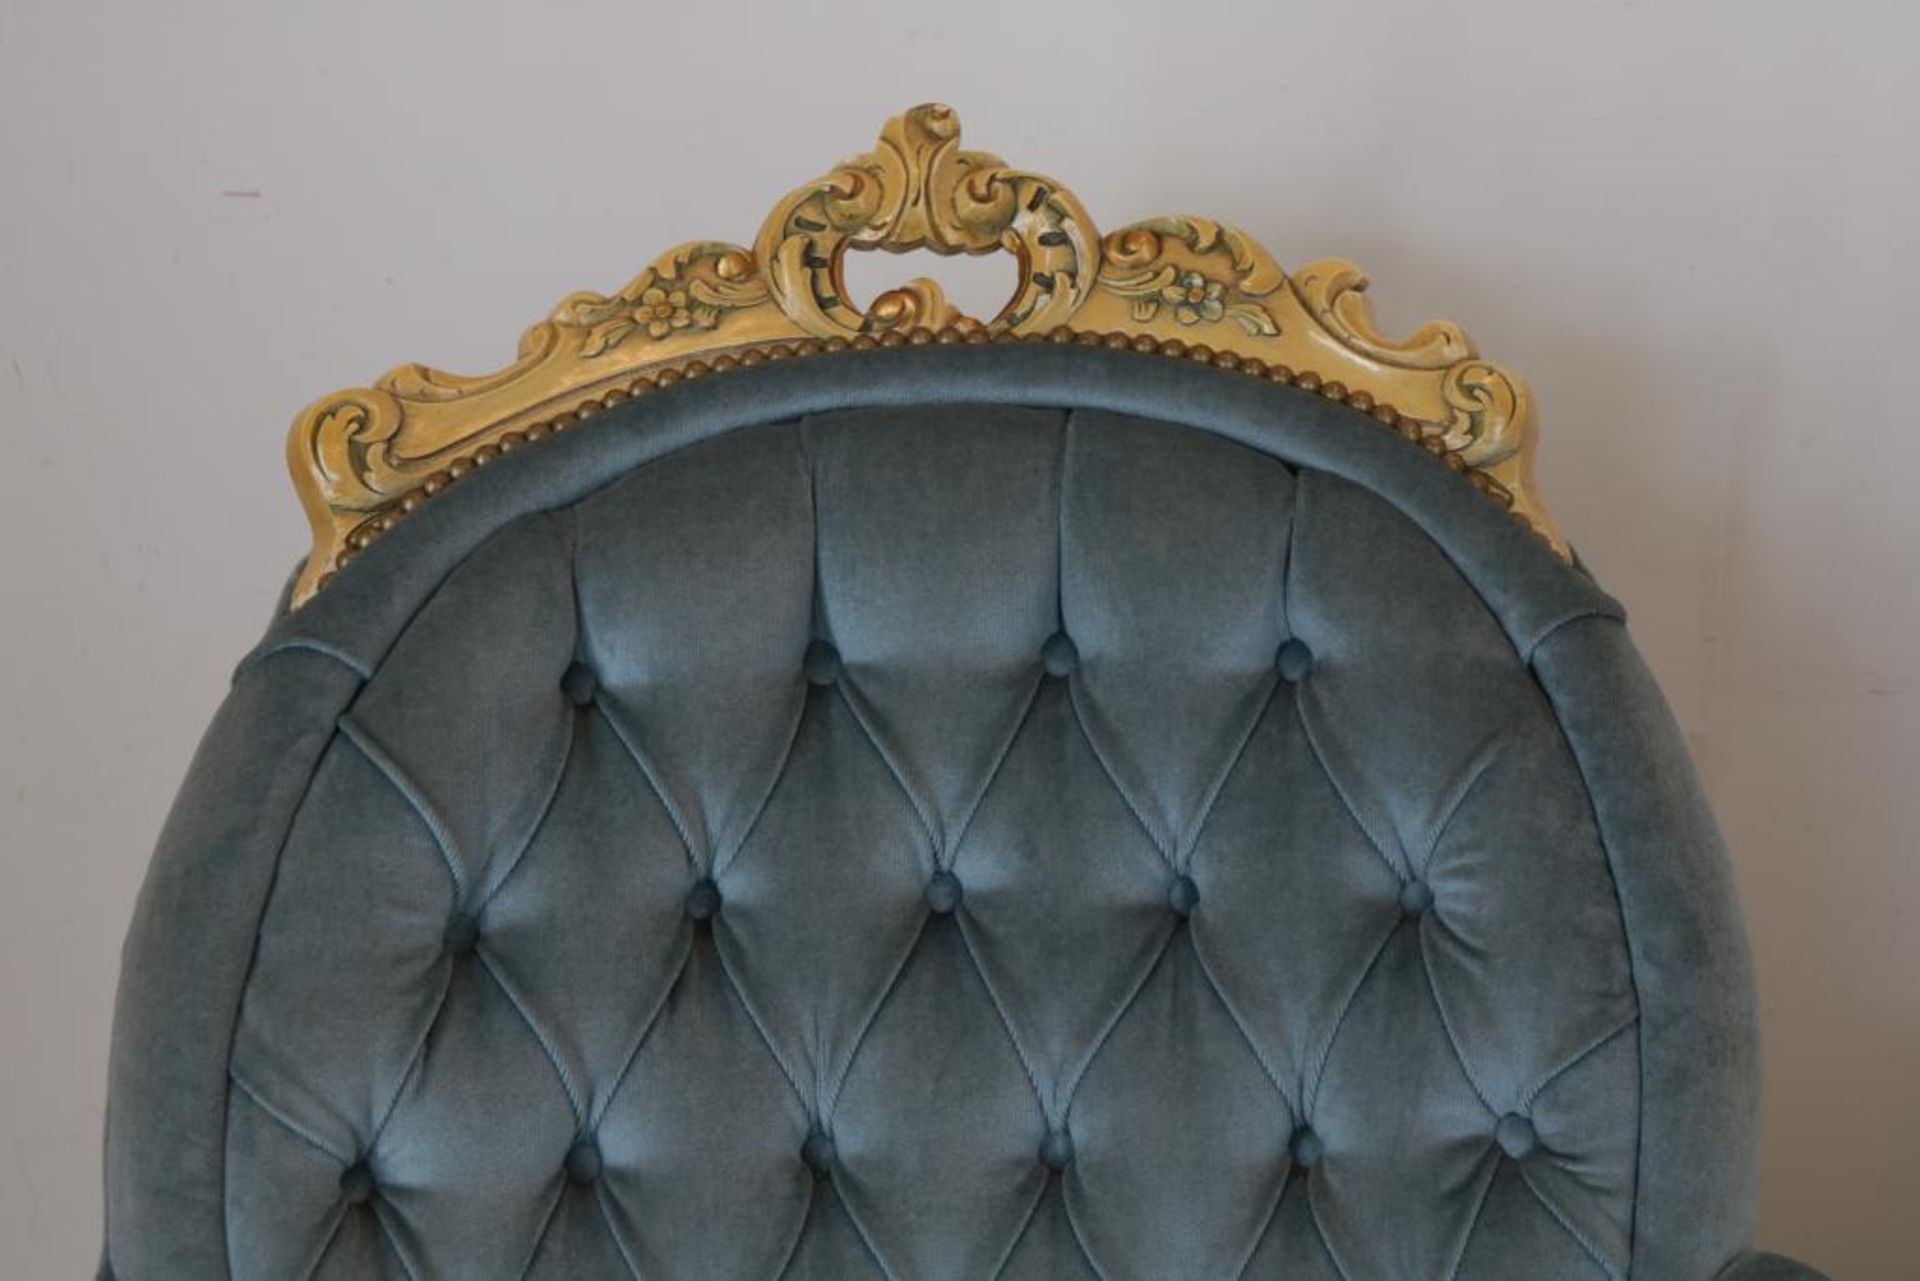 Stel Louis XV-stijl fauteuils - Bild 5 aus 5